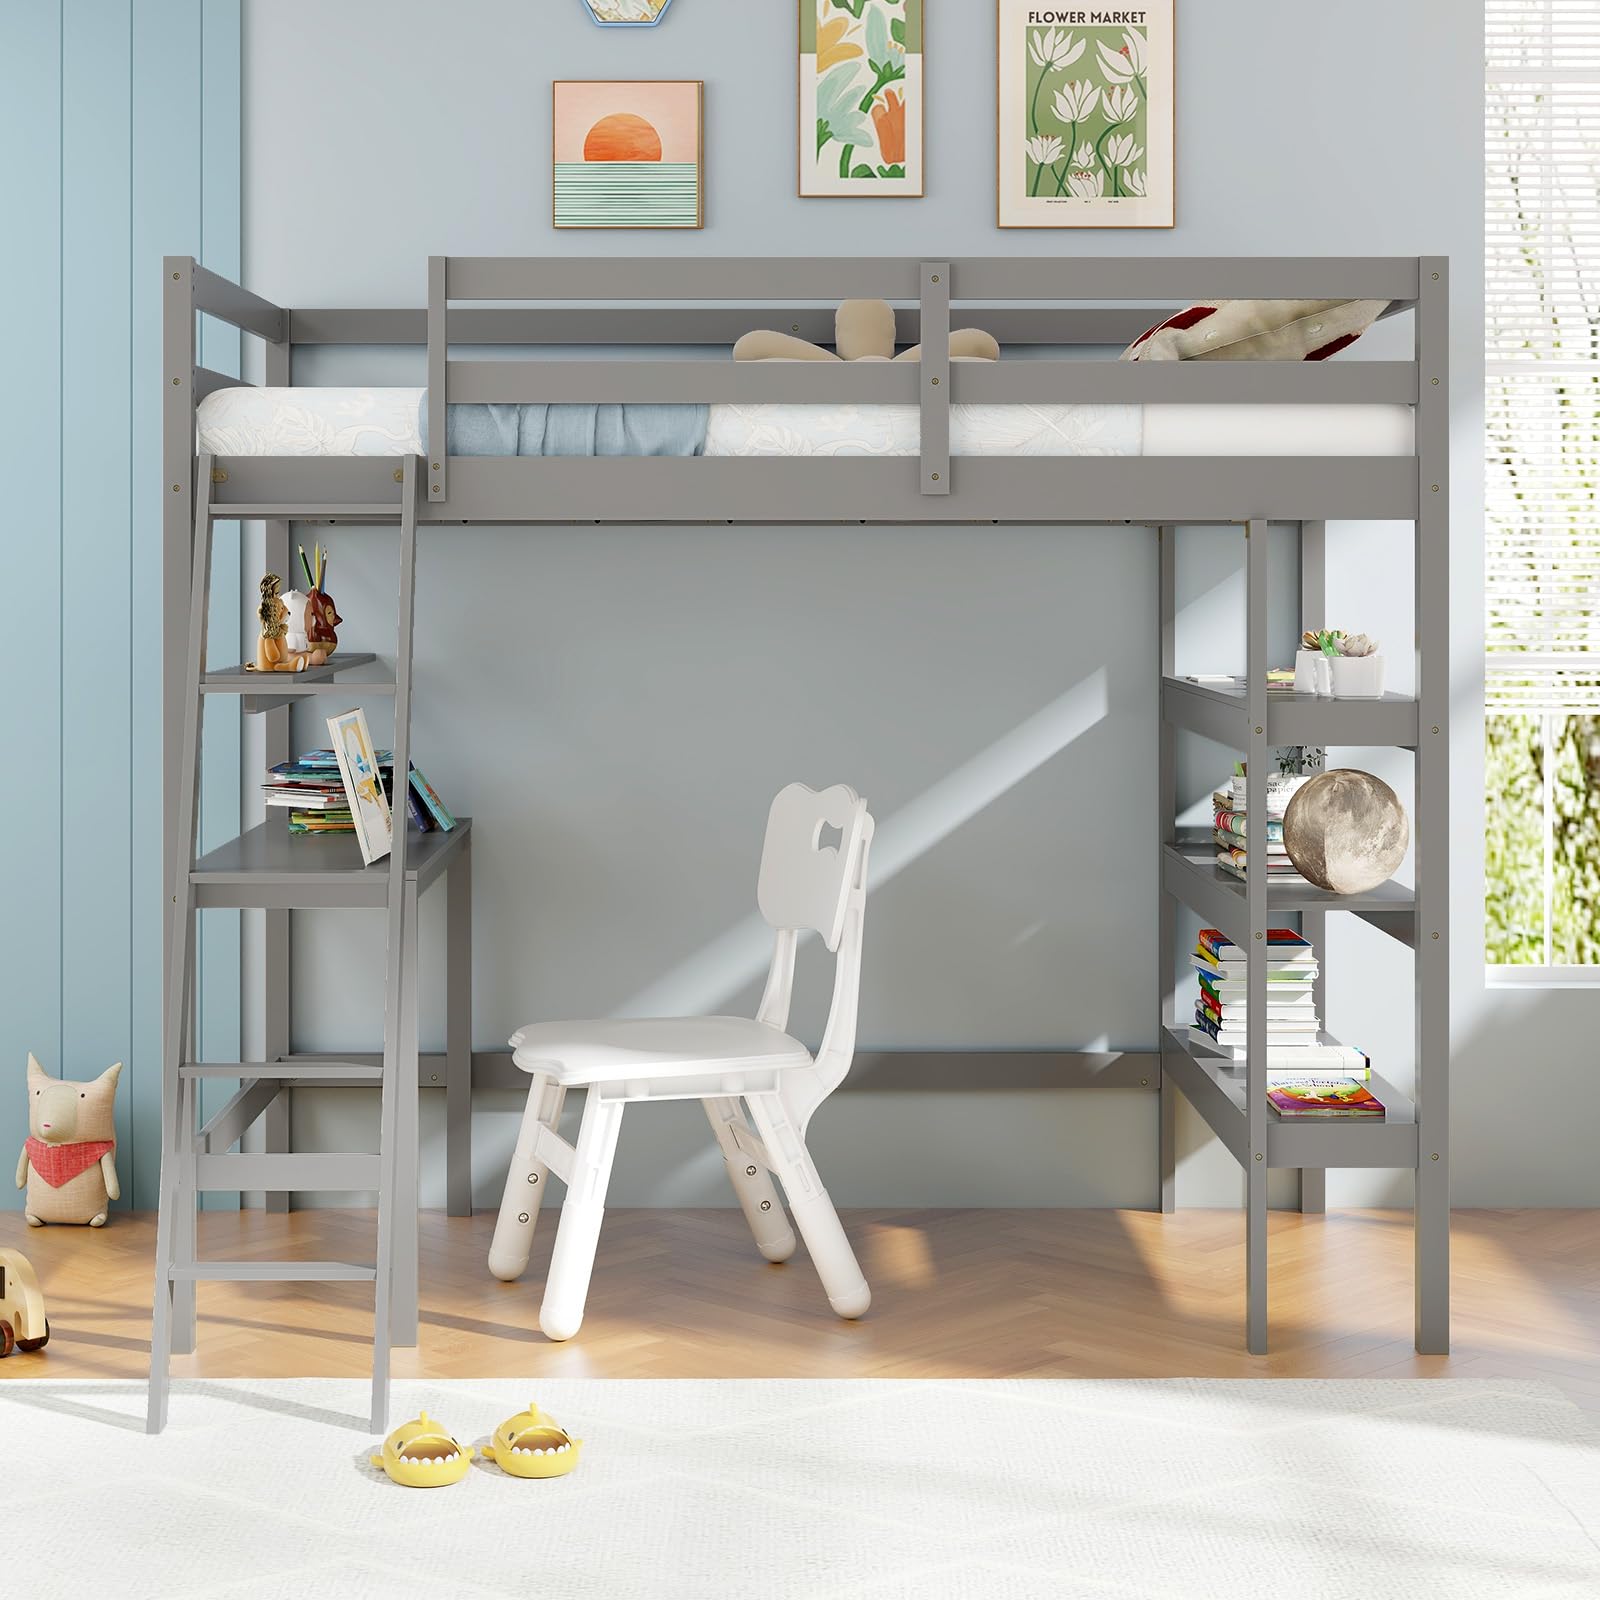 Giantex Loft Bed with Desk & Bookshelves